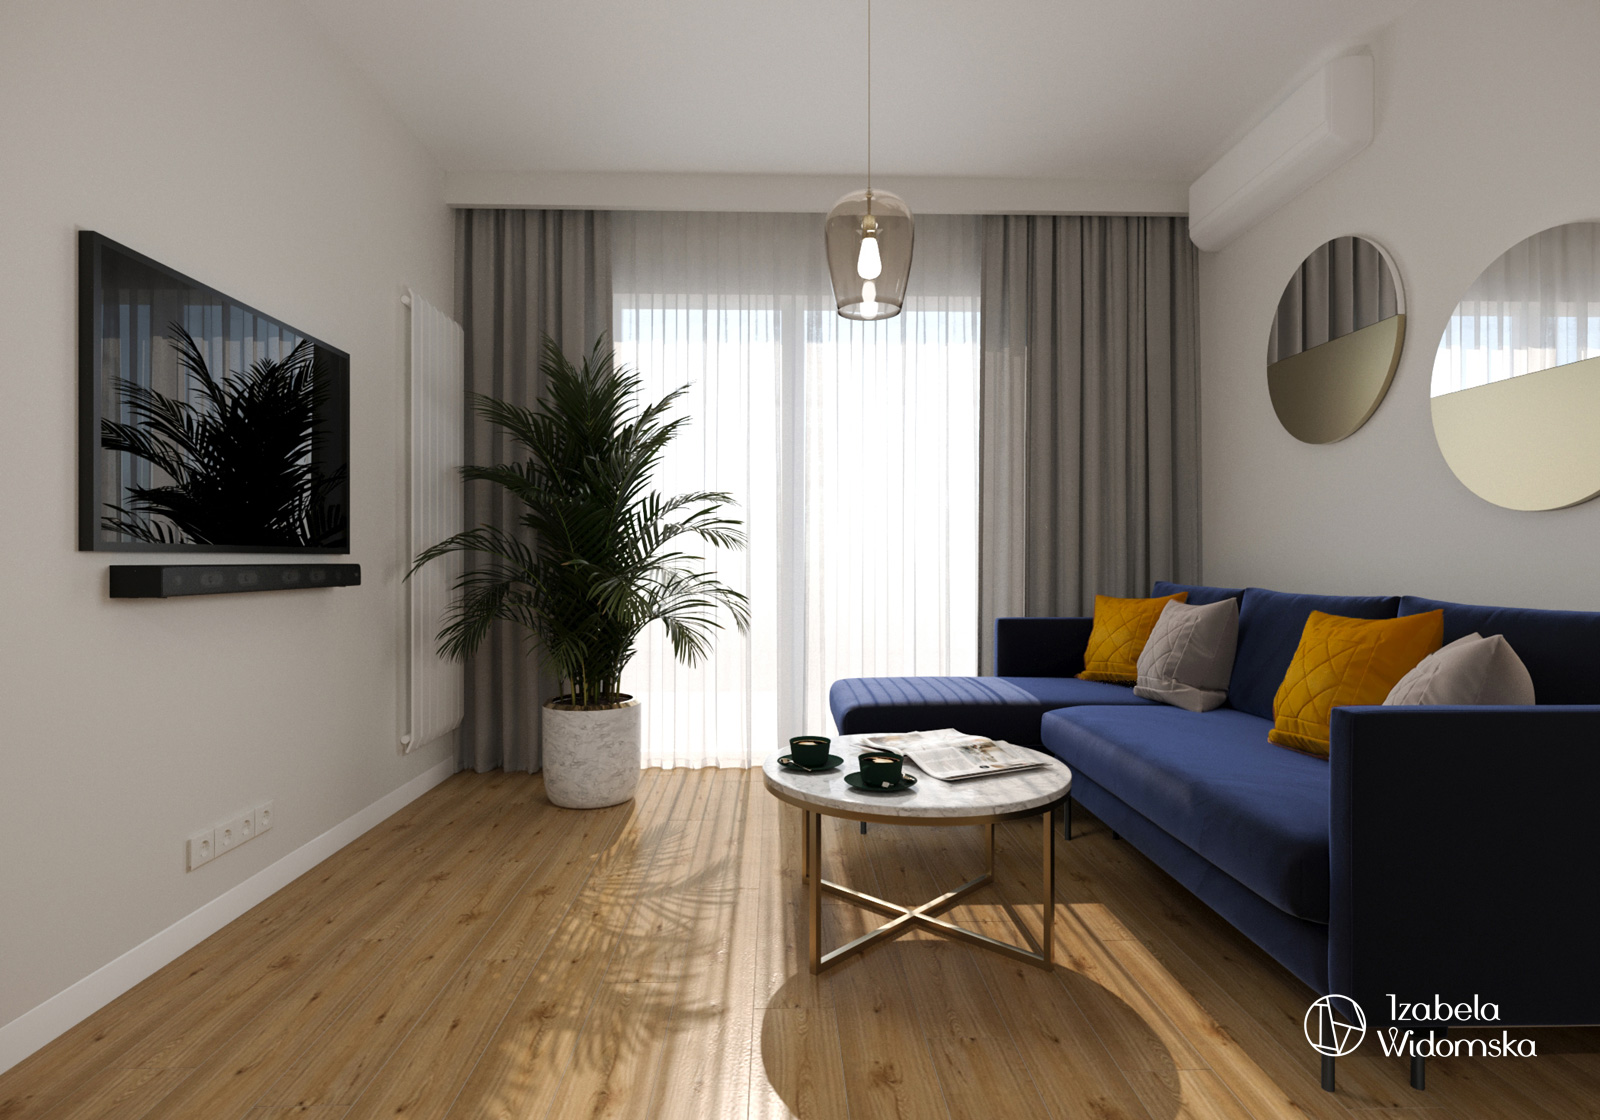 Luksusowy apartament na wynajem | Komfort Piękno Harmonia | Projekt wnętrza architekt Izabela Widomska